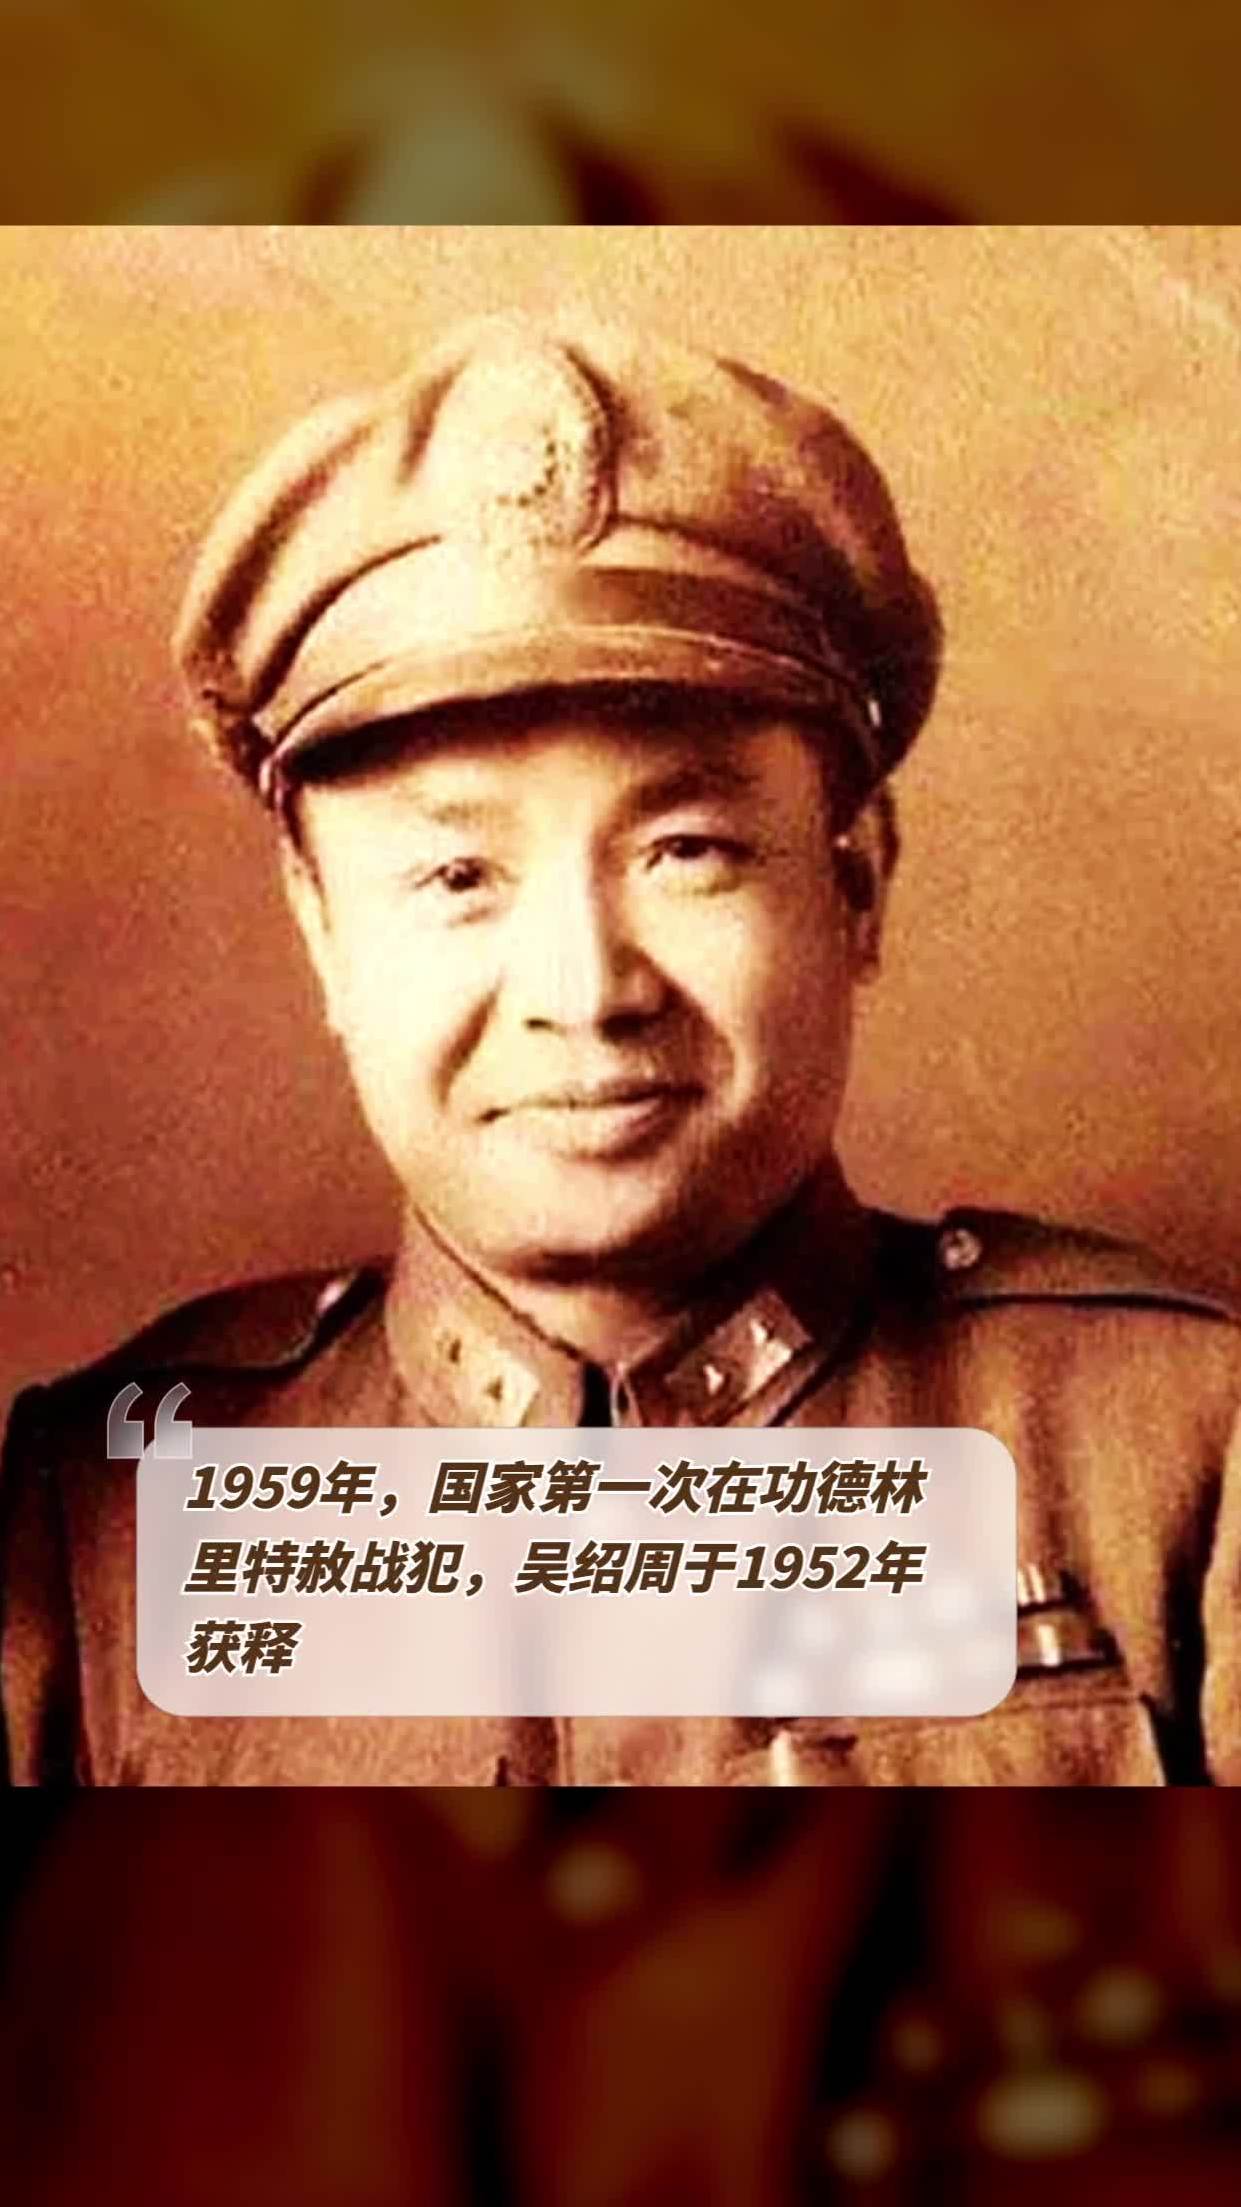 1959年,国家第一次在功德林里特赦战犯,吴绍周于1952年获释